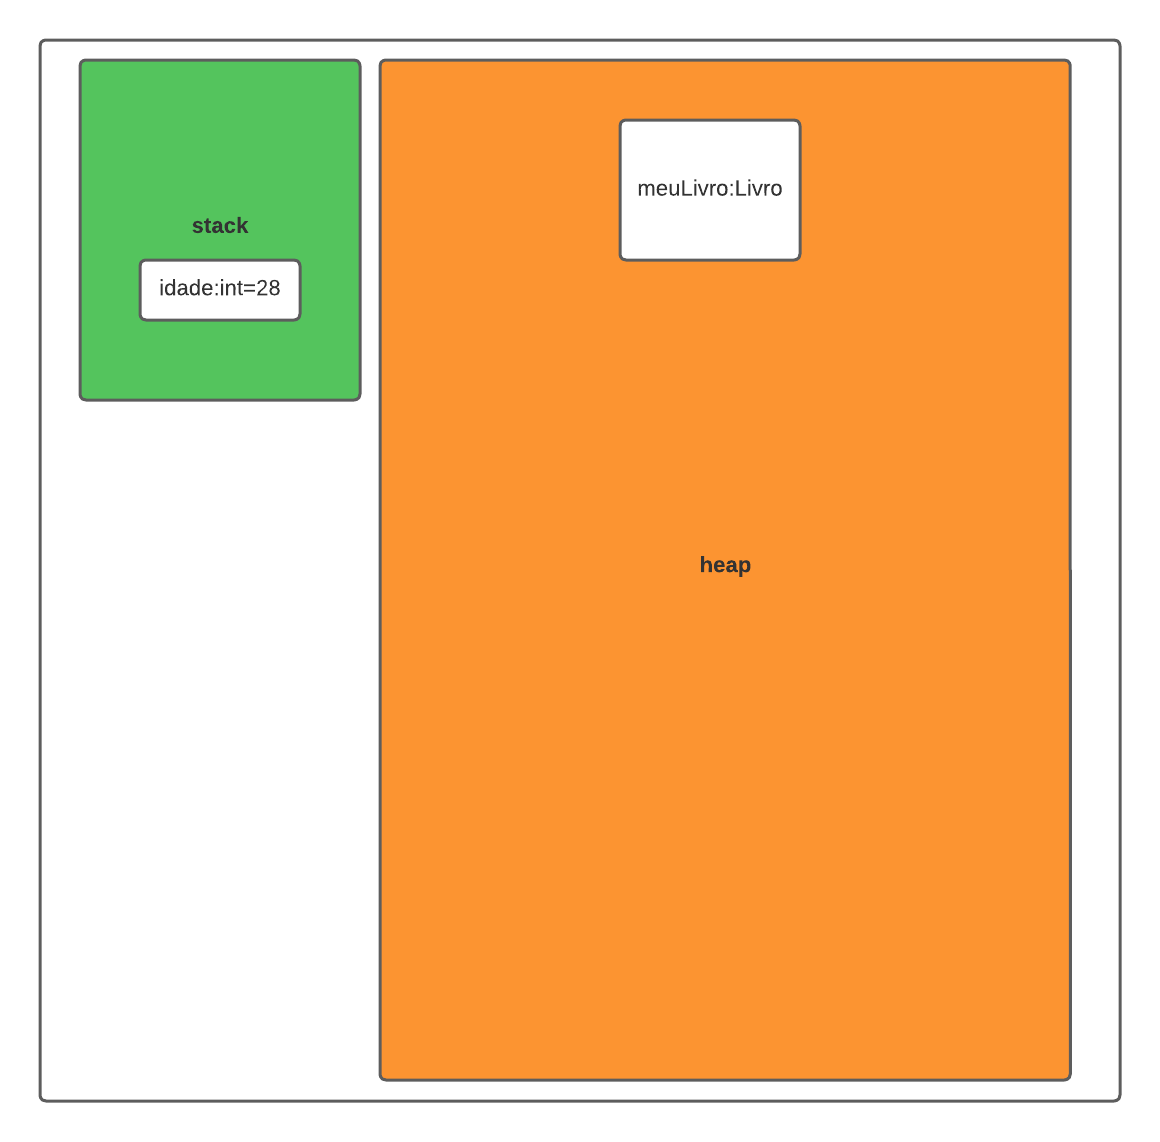 Na imagem é apresentado um retângulo na cor verde representando a memória stack e em seu interior um retângulo menor em branco com a definição da variável idade do tipo `int` com o valor de 28. e um retângulo maior na cor laranja representando a memória heap definindo um objeto meuLivro do tipo Livro.